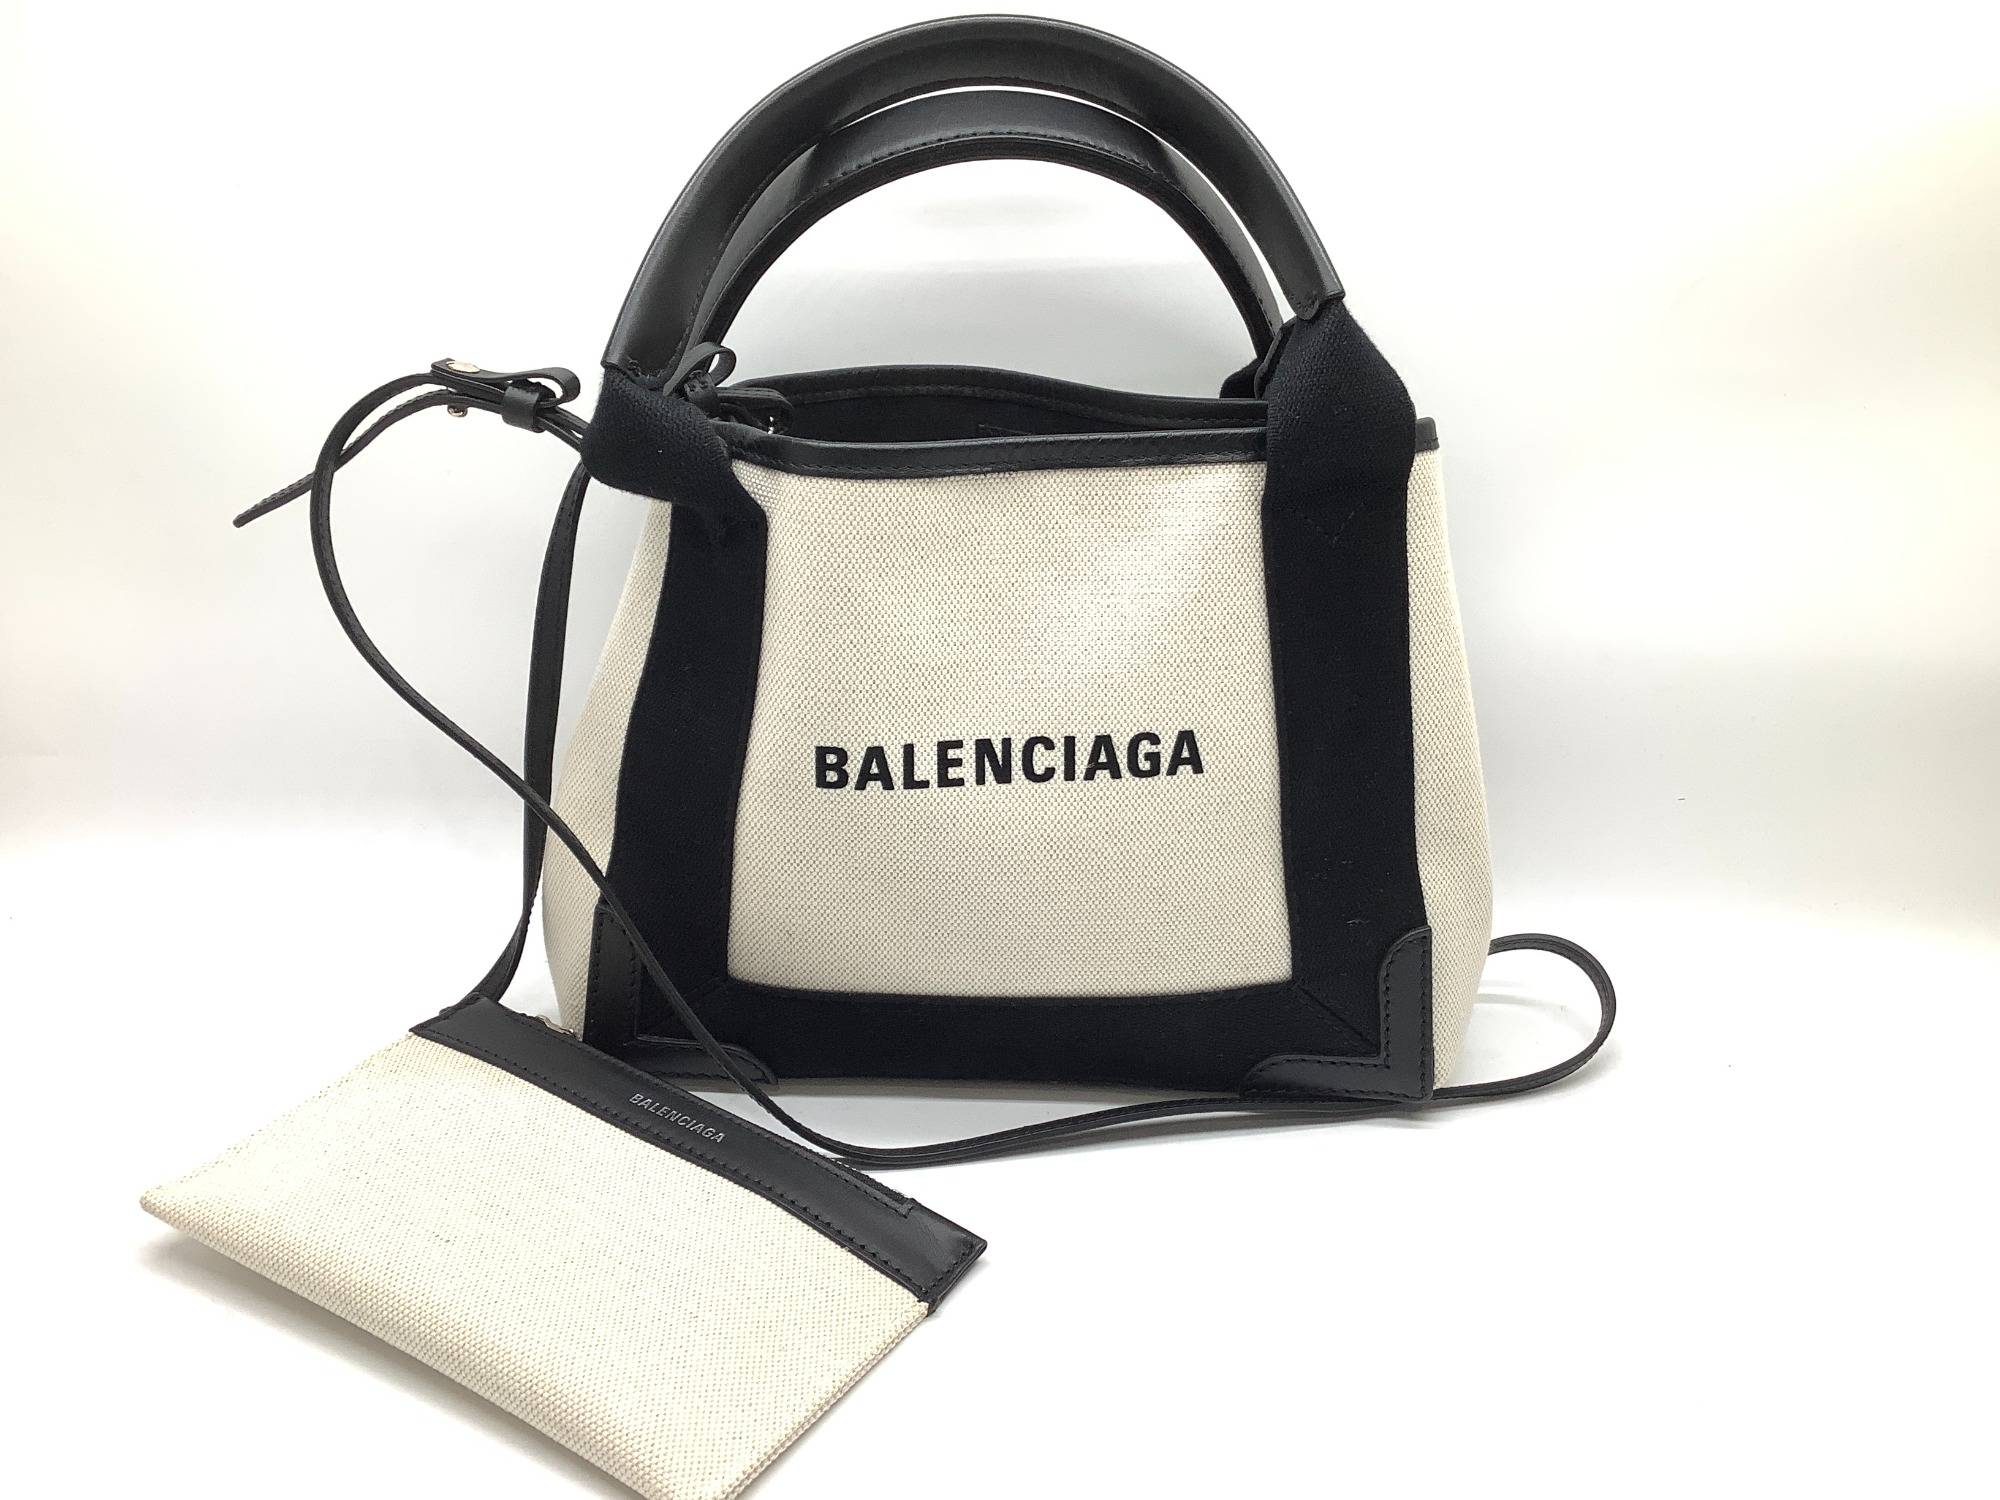 BALENCIAGA(バレンシアガ)の2WAYバッグ、ネイビーカバスが入荷です